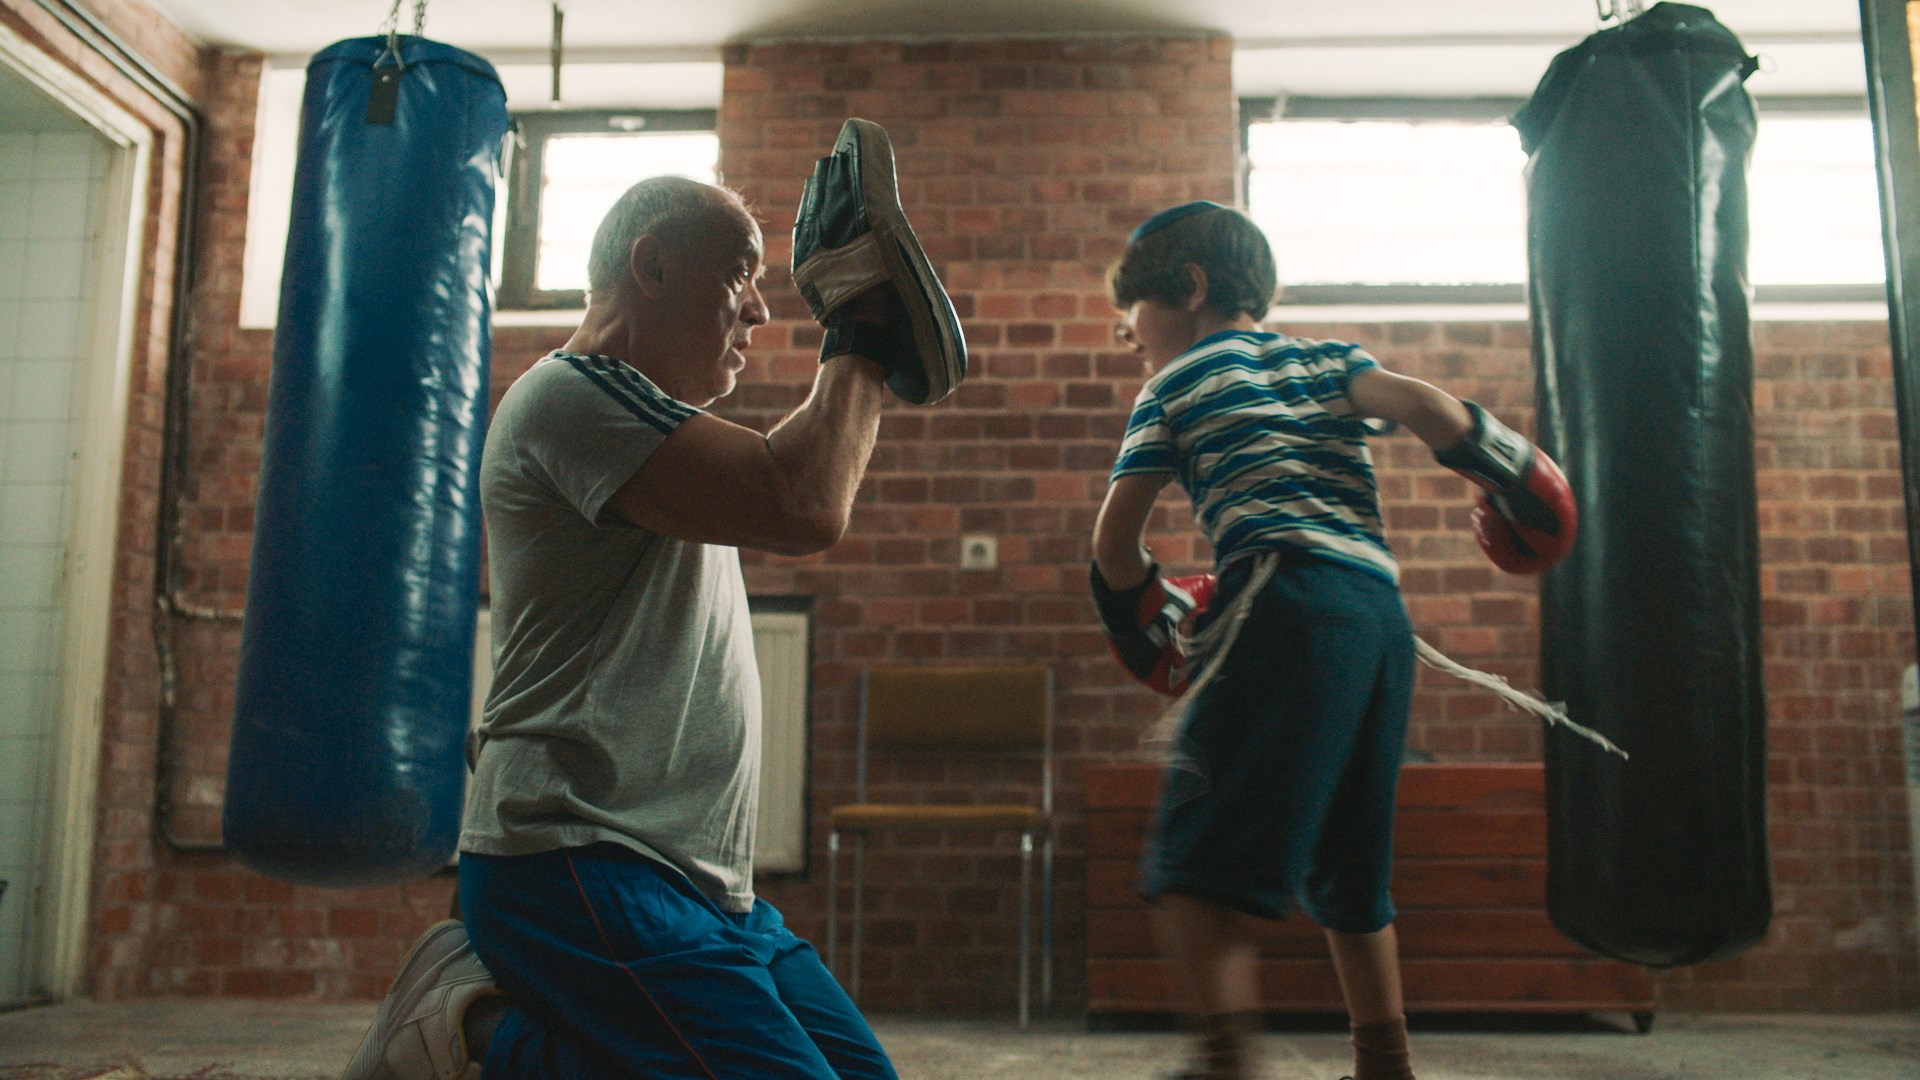 Két zsidó besétál a bokszedzésre – ez nem vicc, hanem egy nagyszerű film